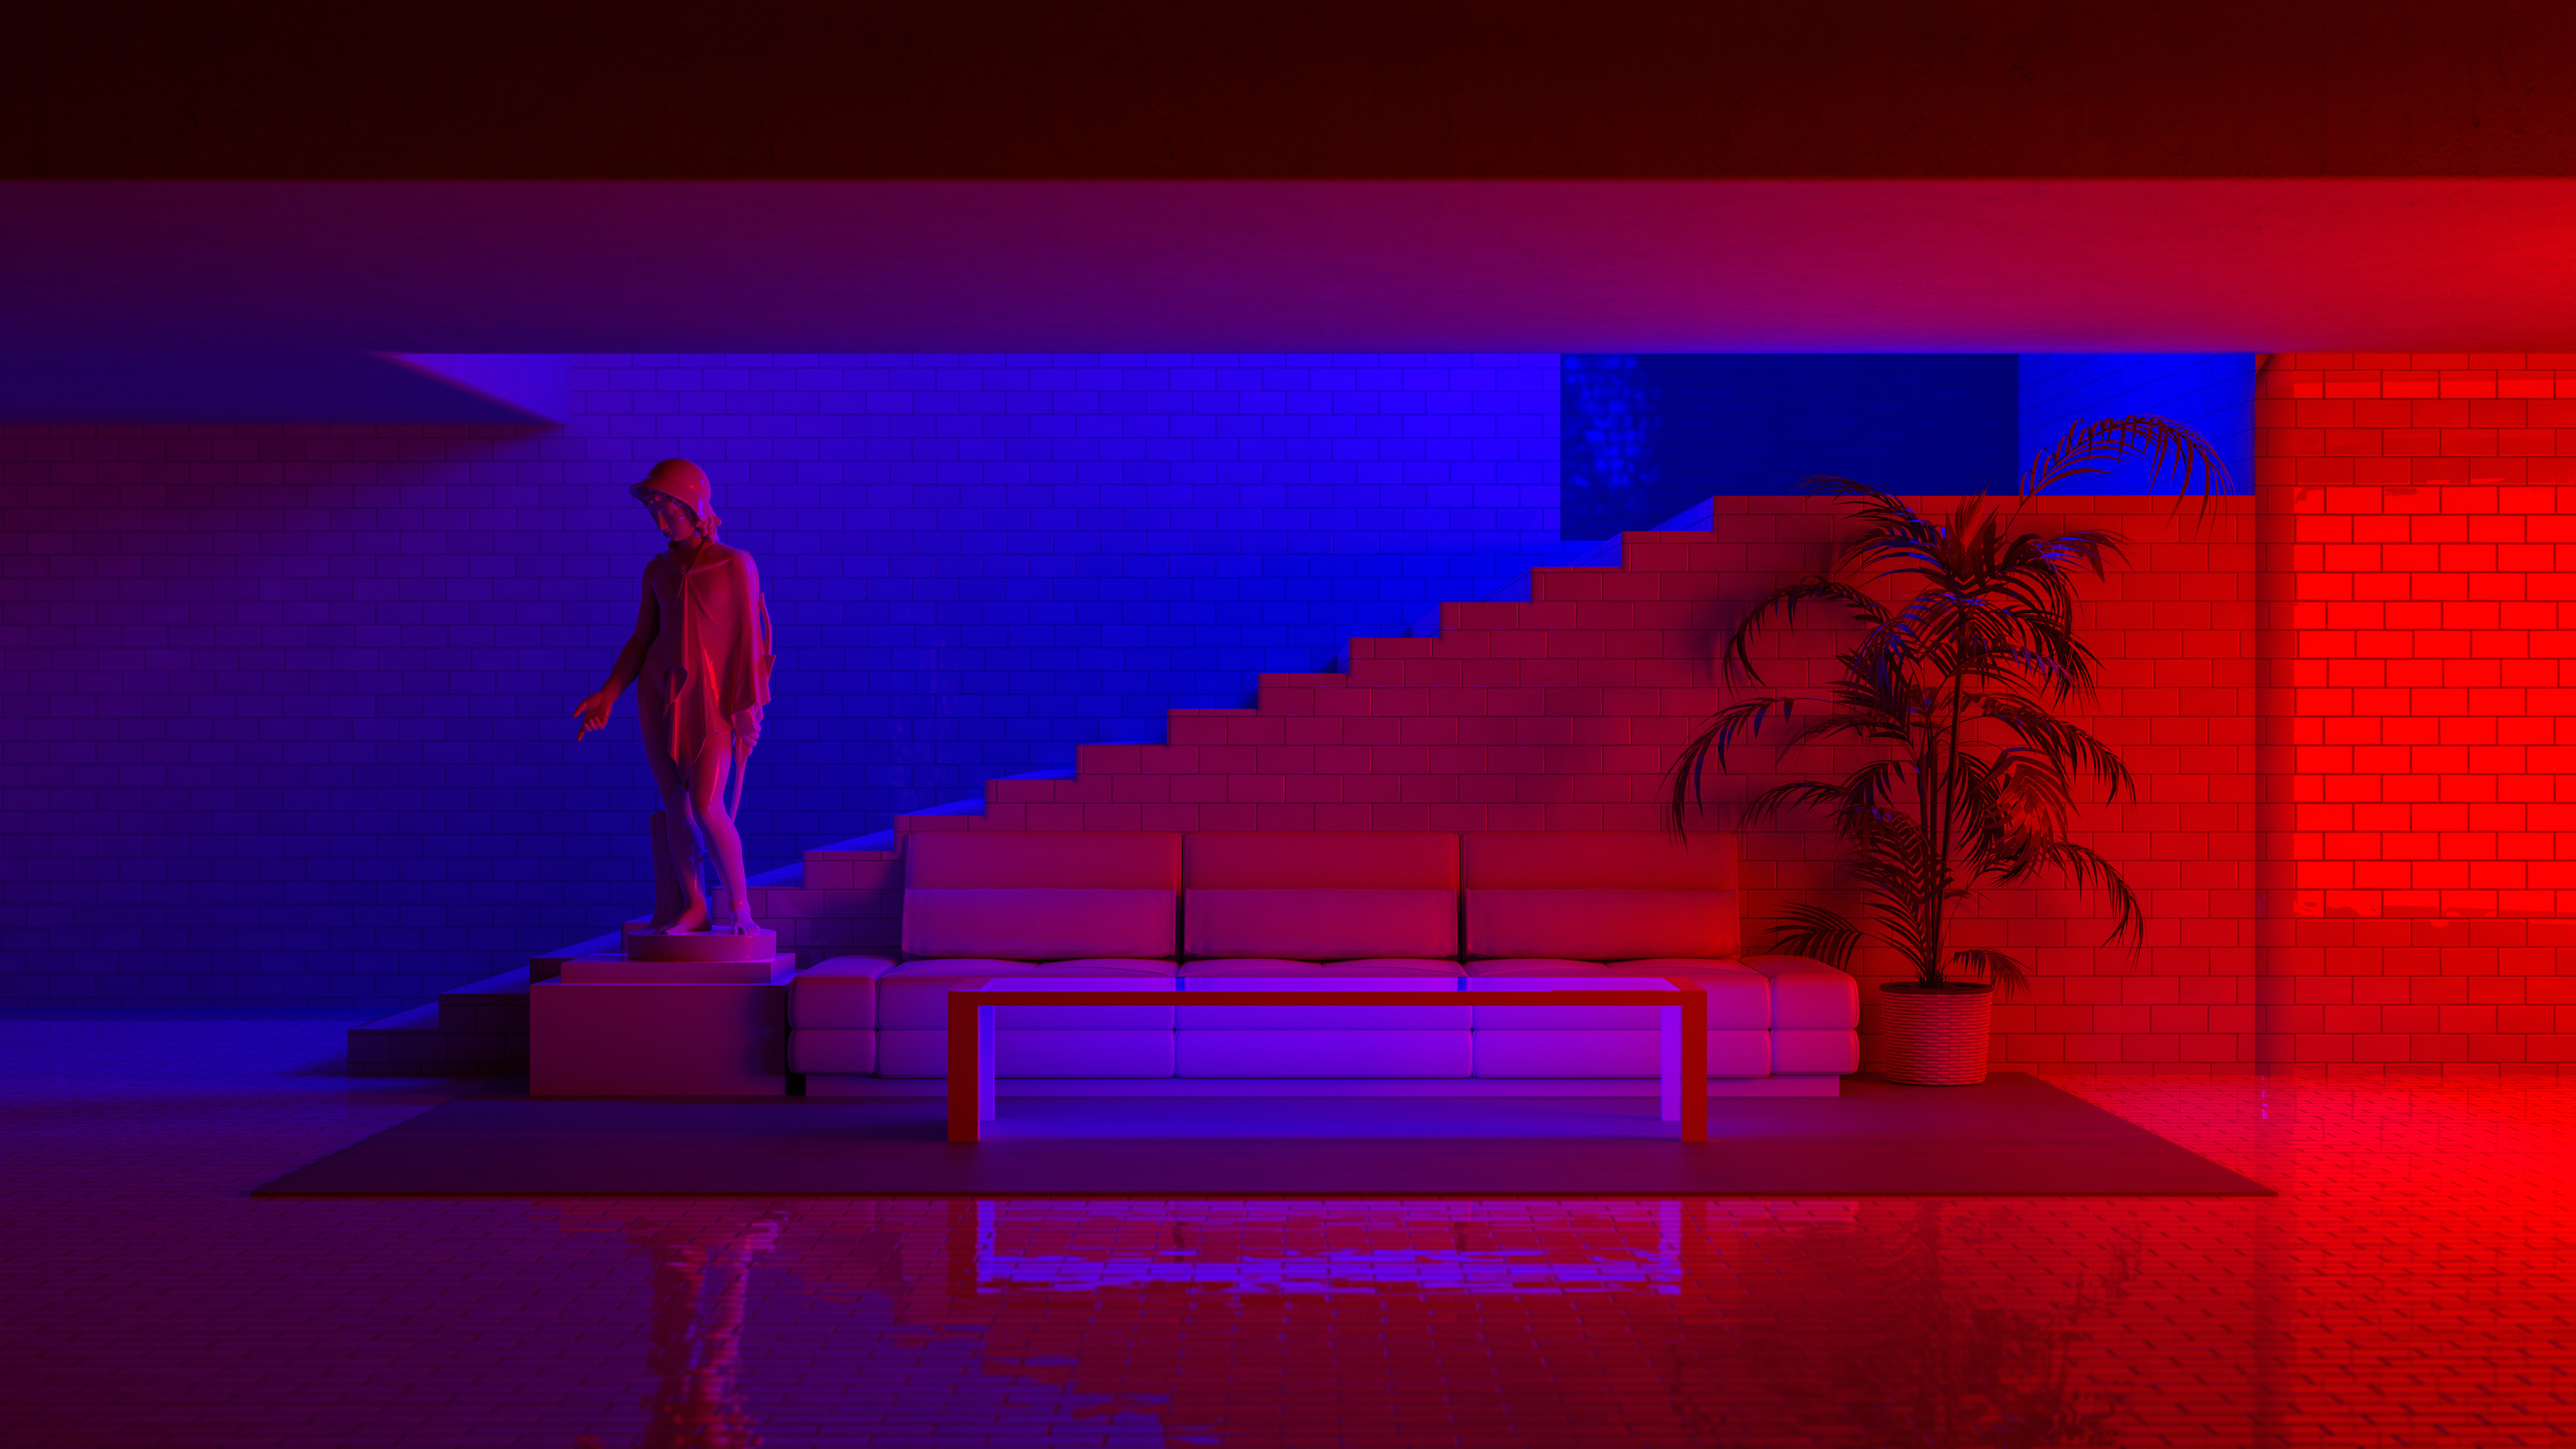 General 3840x2160 red blue statue Eros plants bricks couch neon interior design CGI digital art Blender minimalism